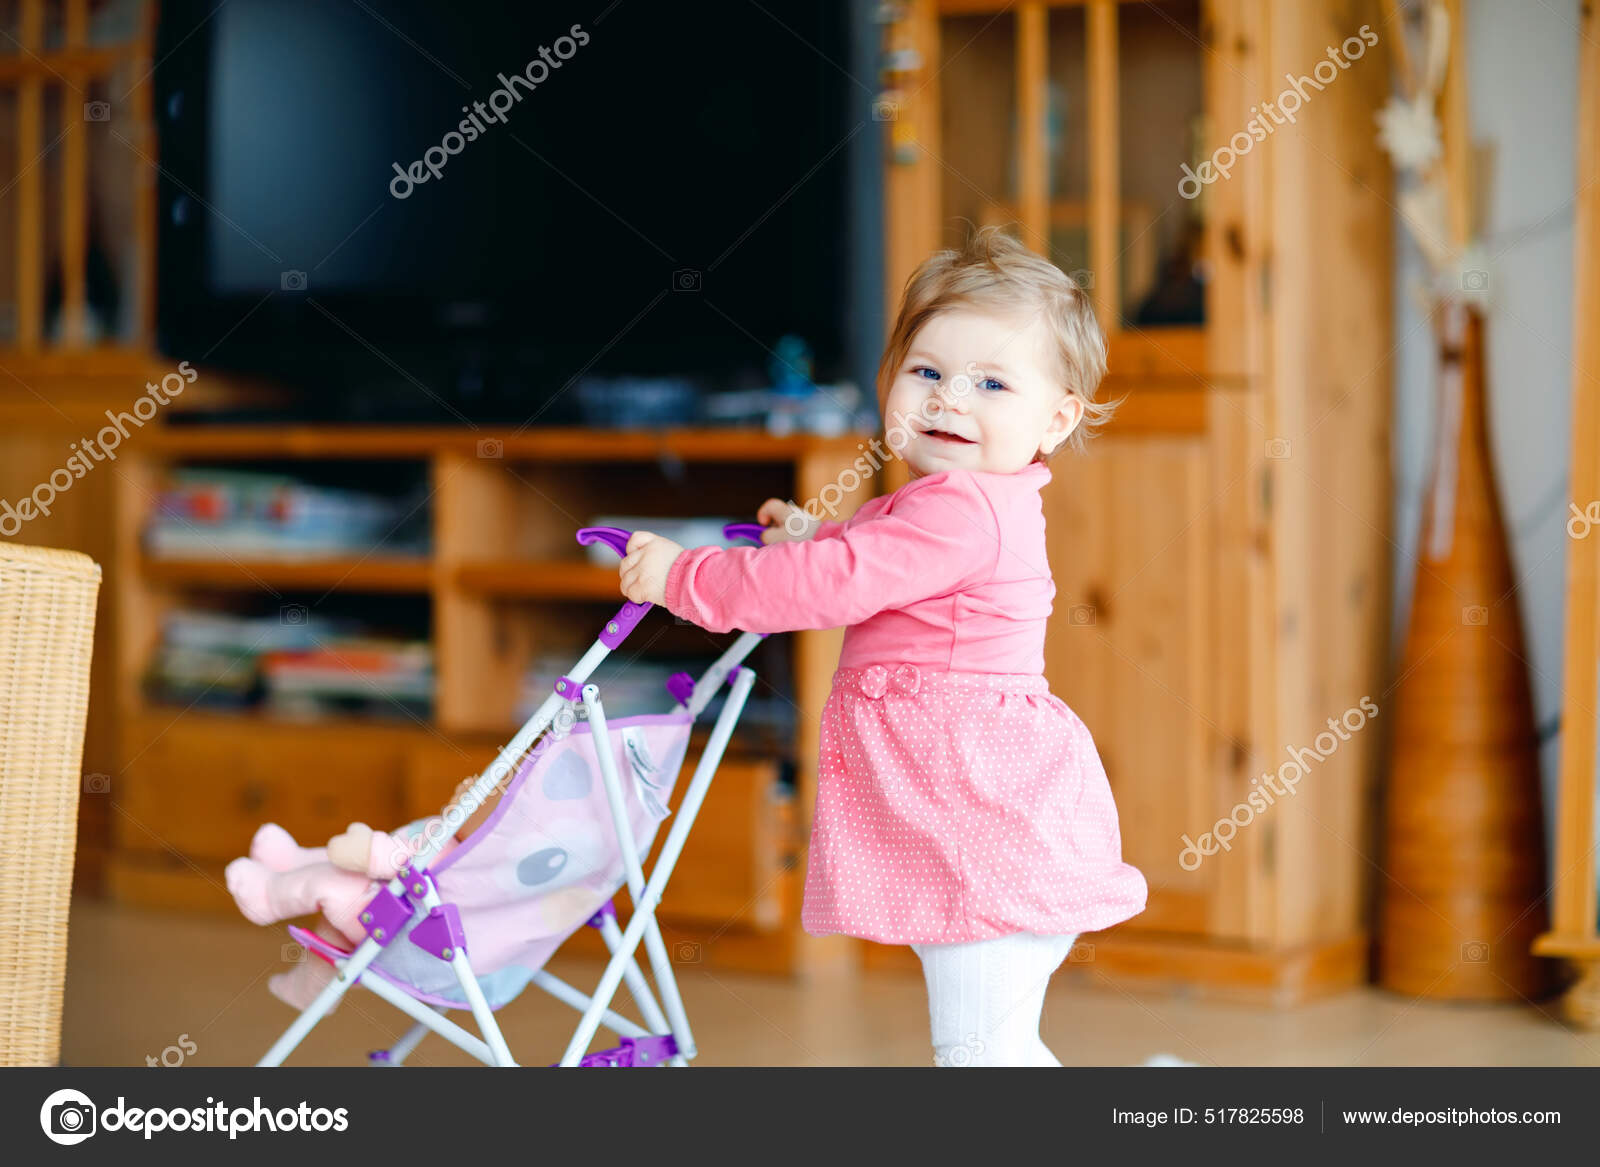 Fotografie Mutter mit Kinderwagen auf Kufen, niedliche Kinder